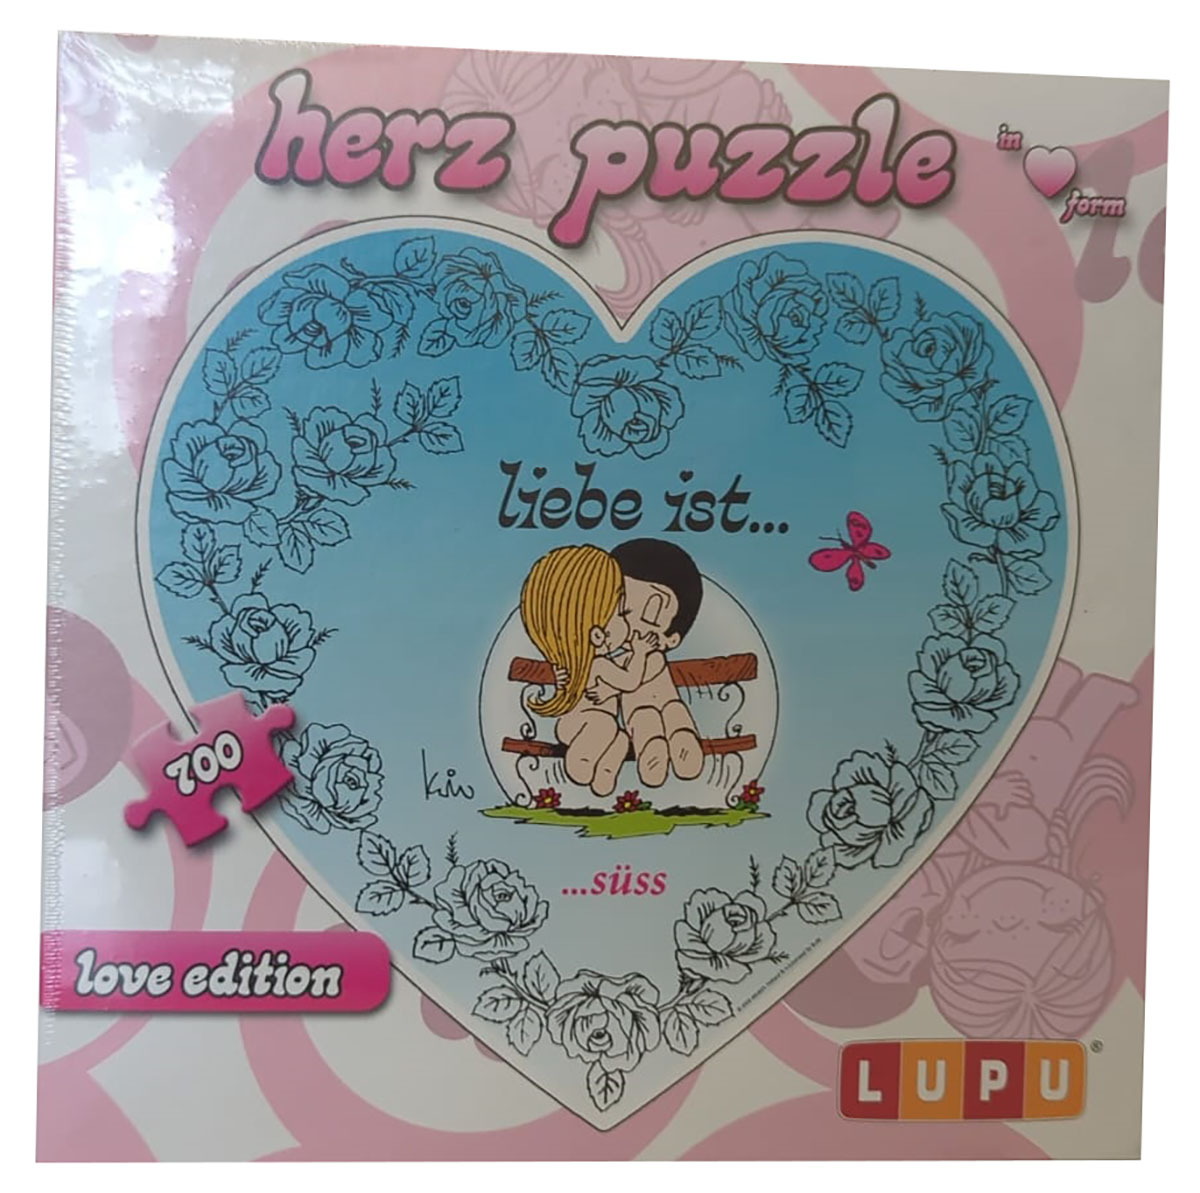 LUPU 1006 Liebe ist... süß Puzzle Herz 700 Teile love Edition mit Rosen, Schmetterlingen, Paar auf Bank